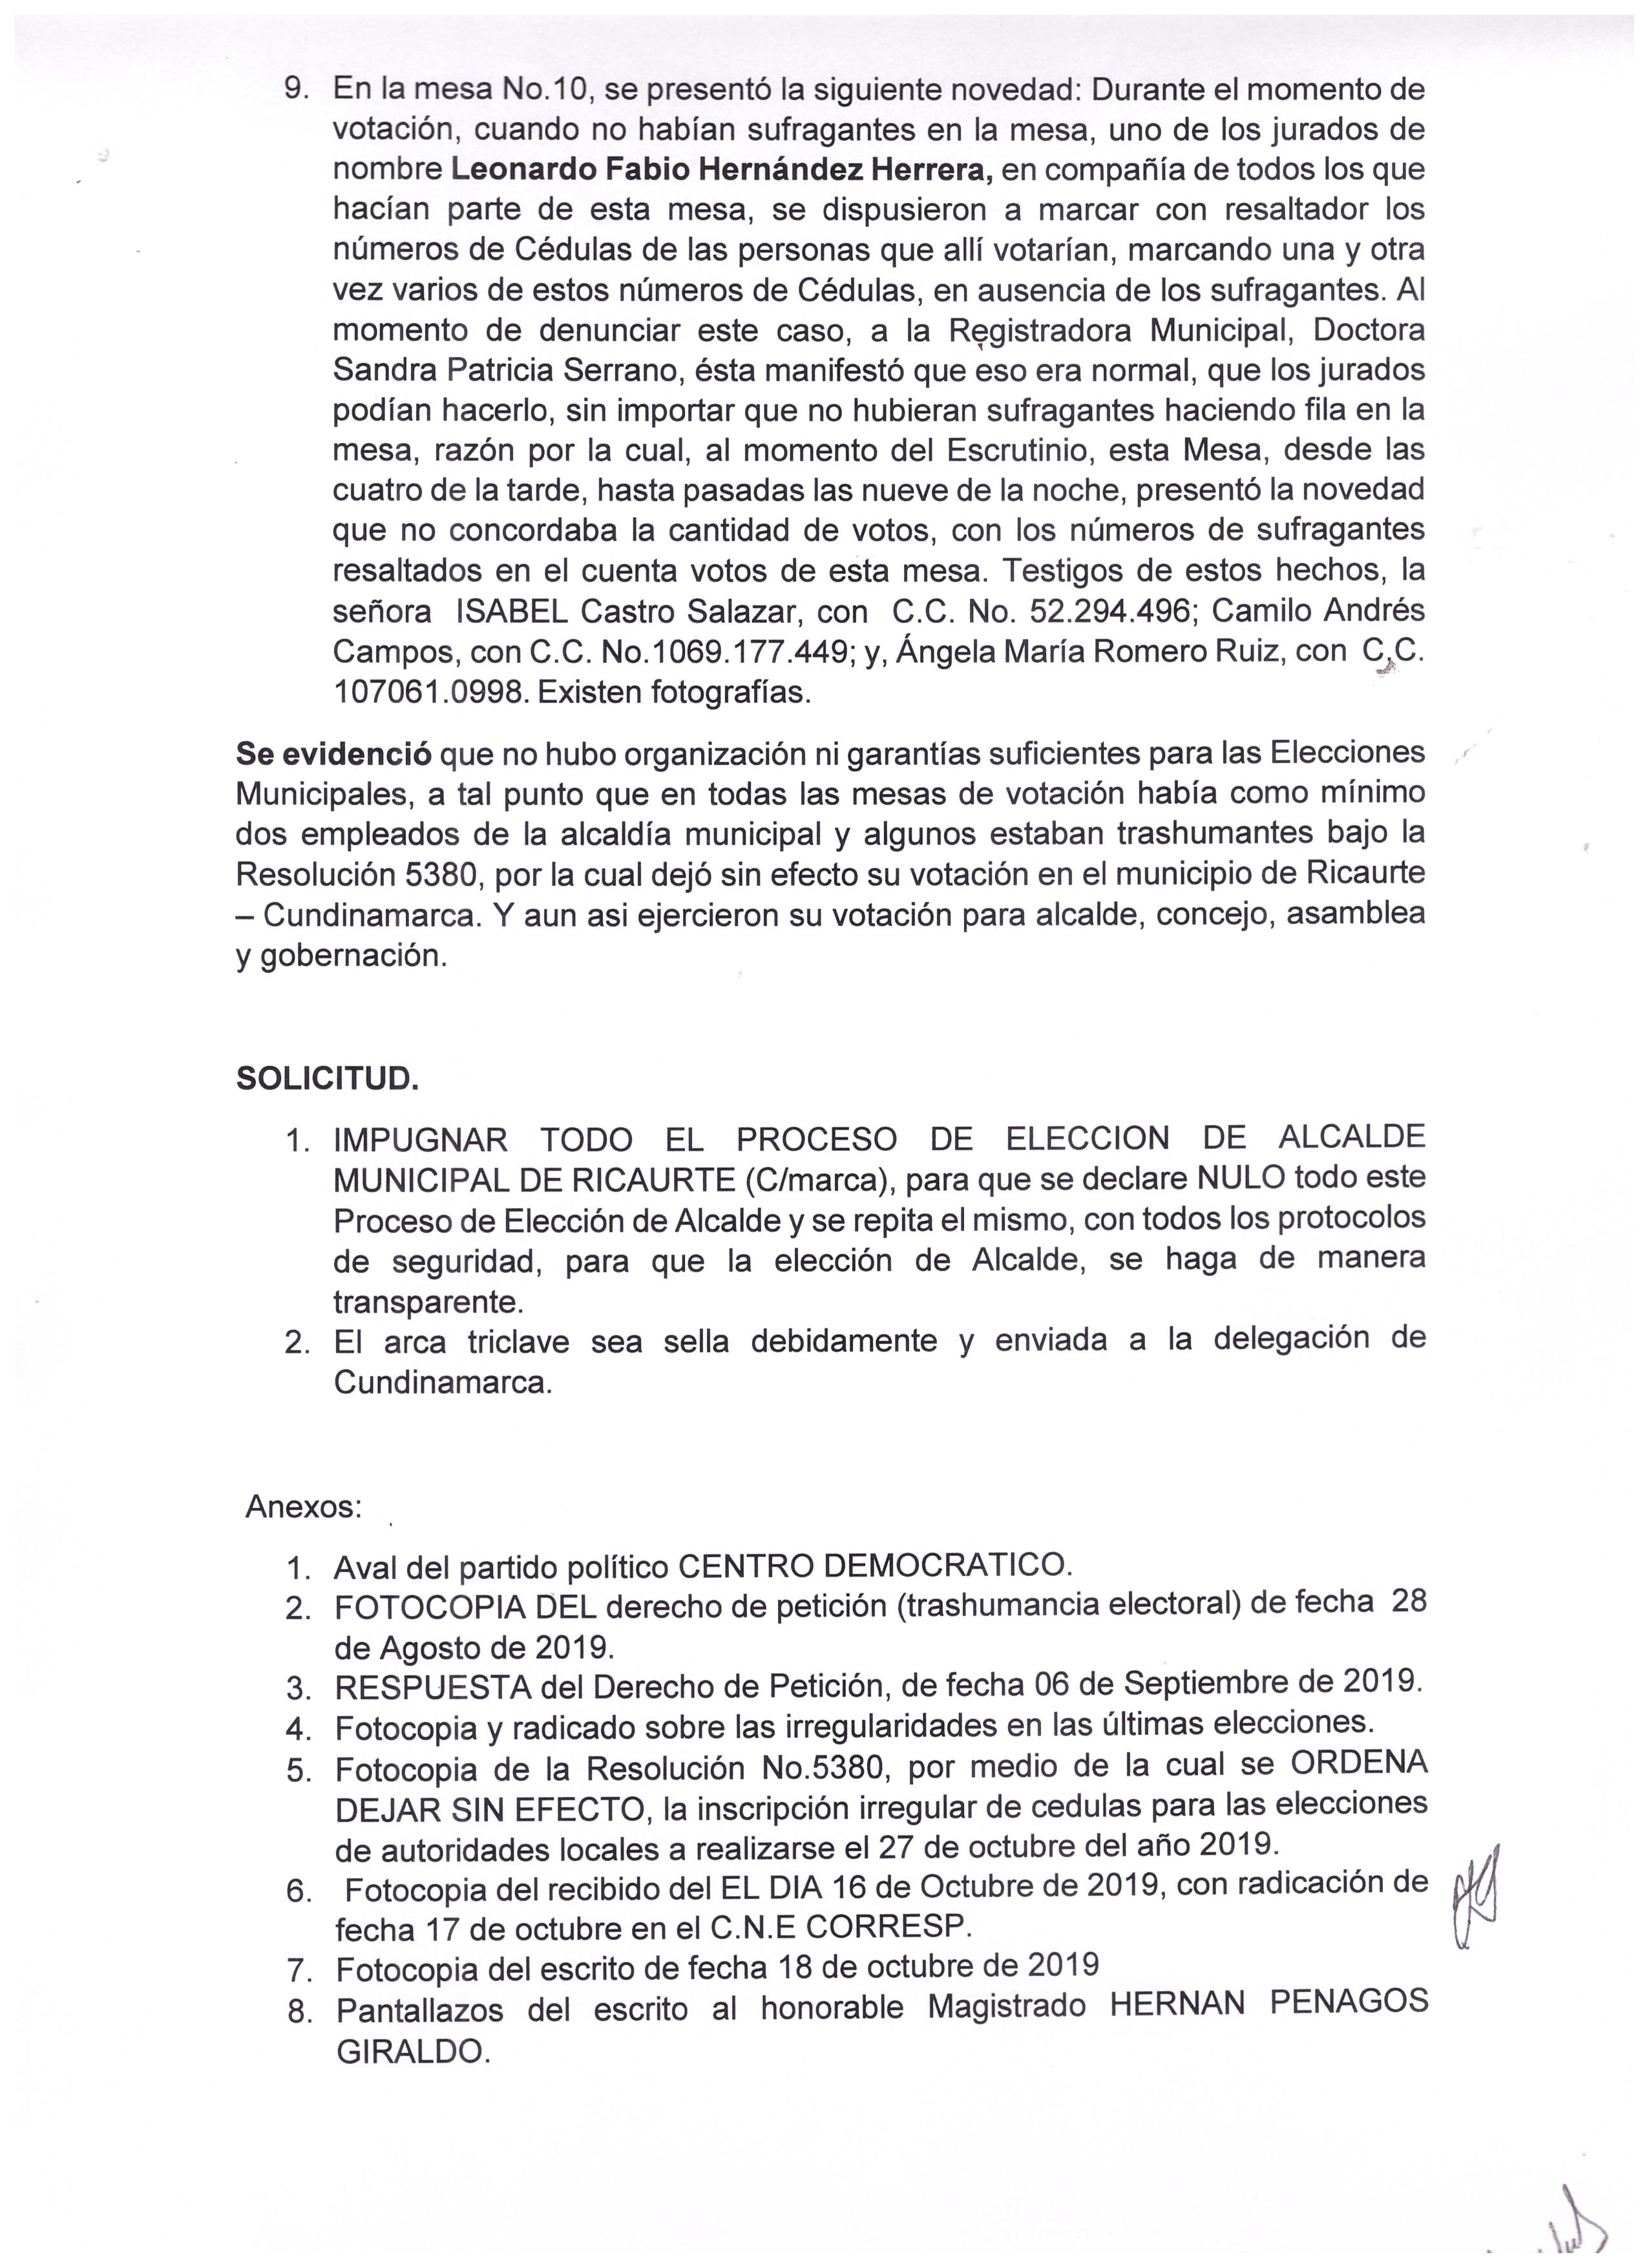 Impugnación al proceso de elección de Alcalde y concejales del municipio de Ricaurte (Cundinamarca) 2019.